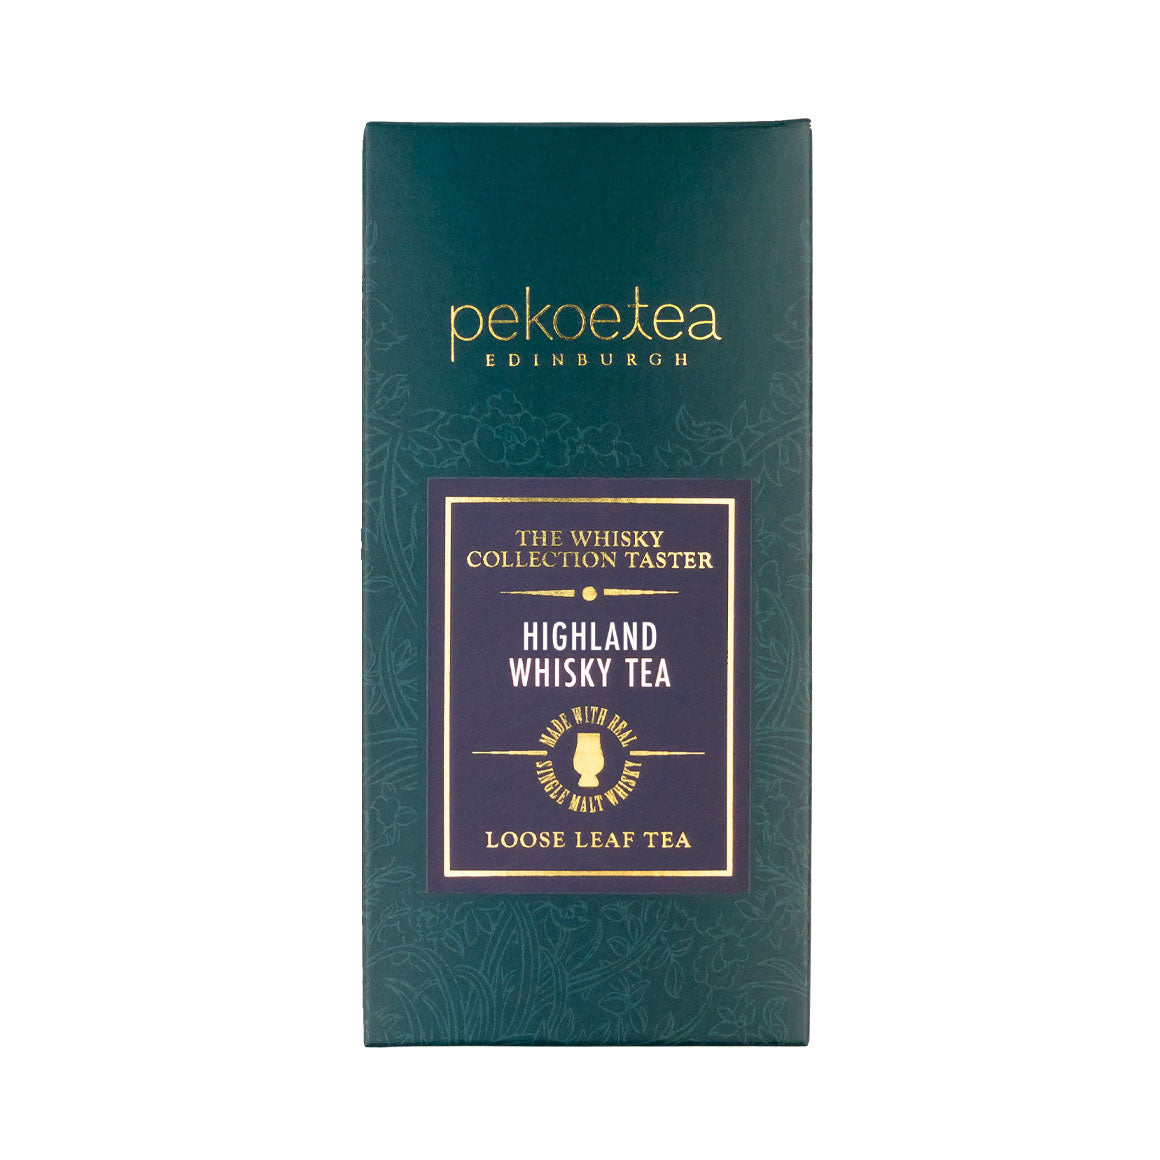 PekoeTea Edinburgh Whisky Tea Collection Highland Loose Leaf Taster Box